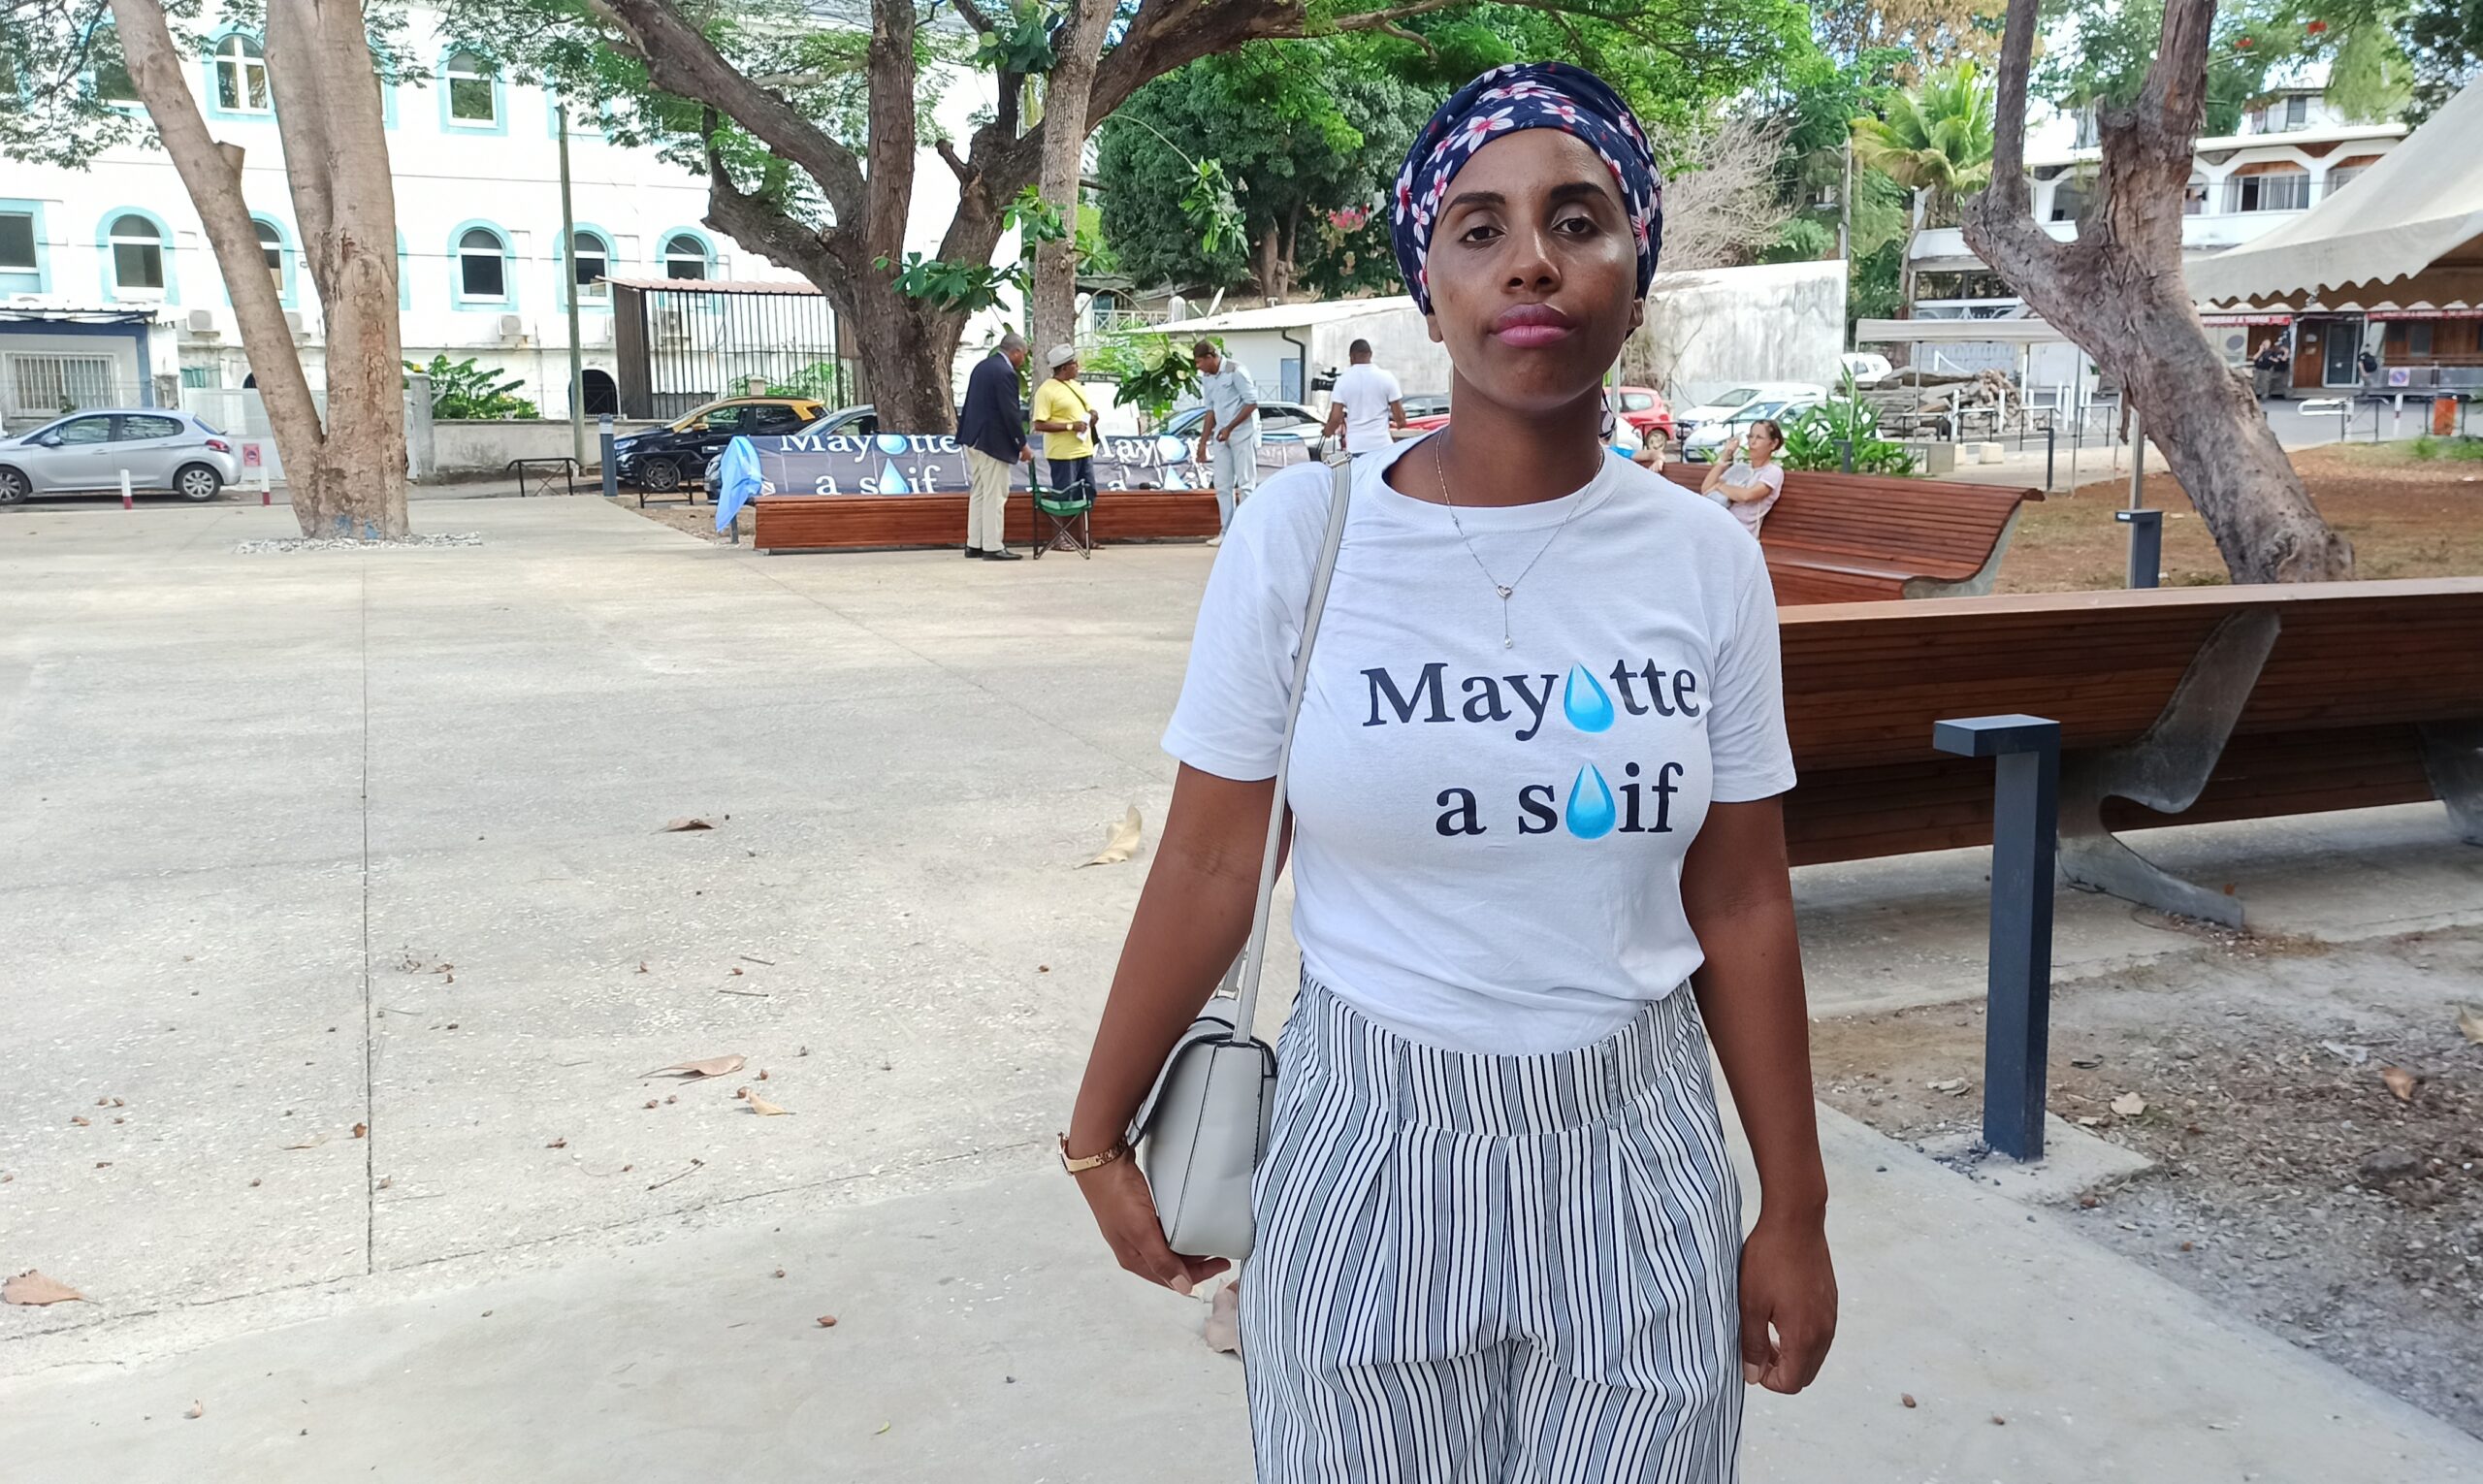 Crise de l’eau une troisième manifestation du collectif Mayotte a soif 